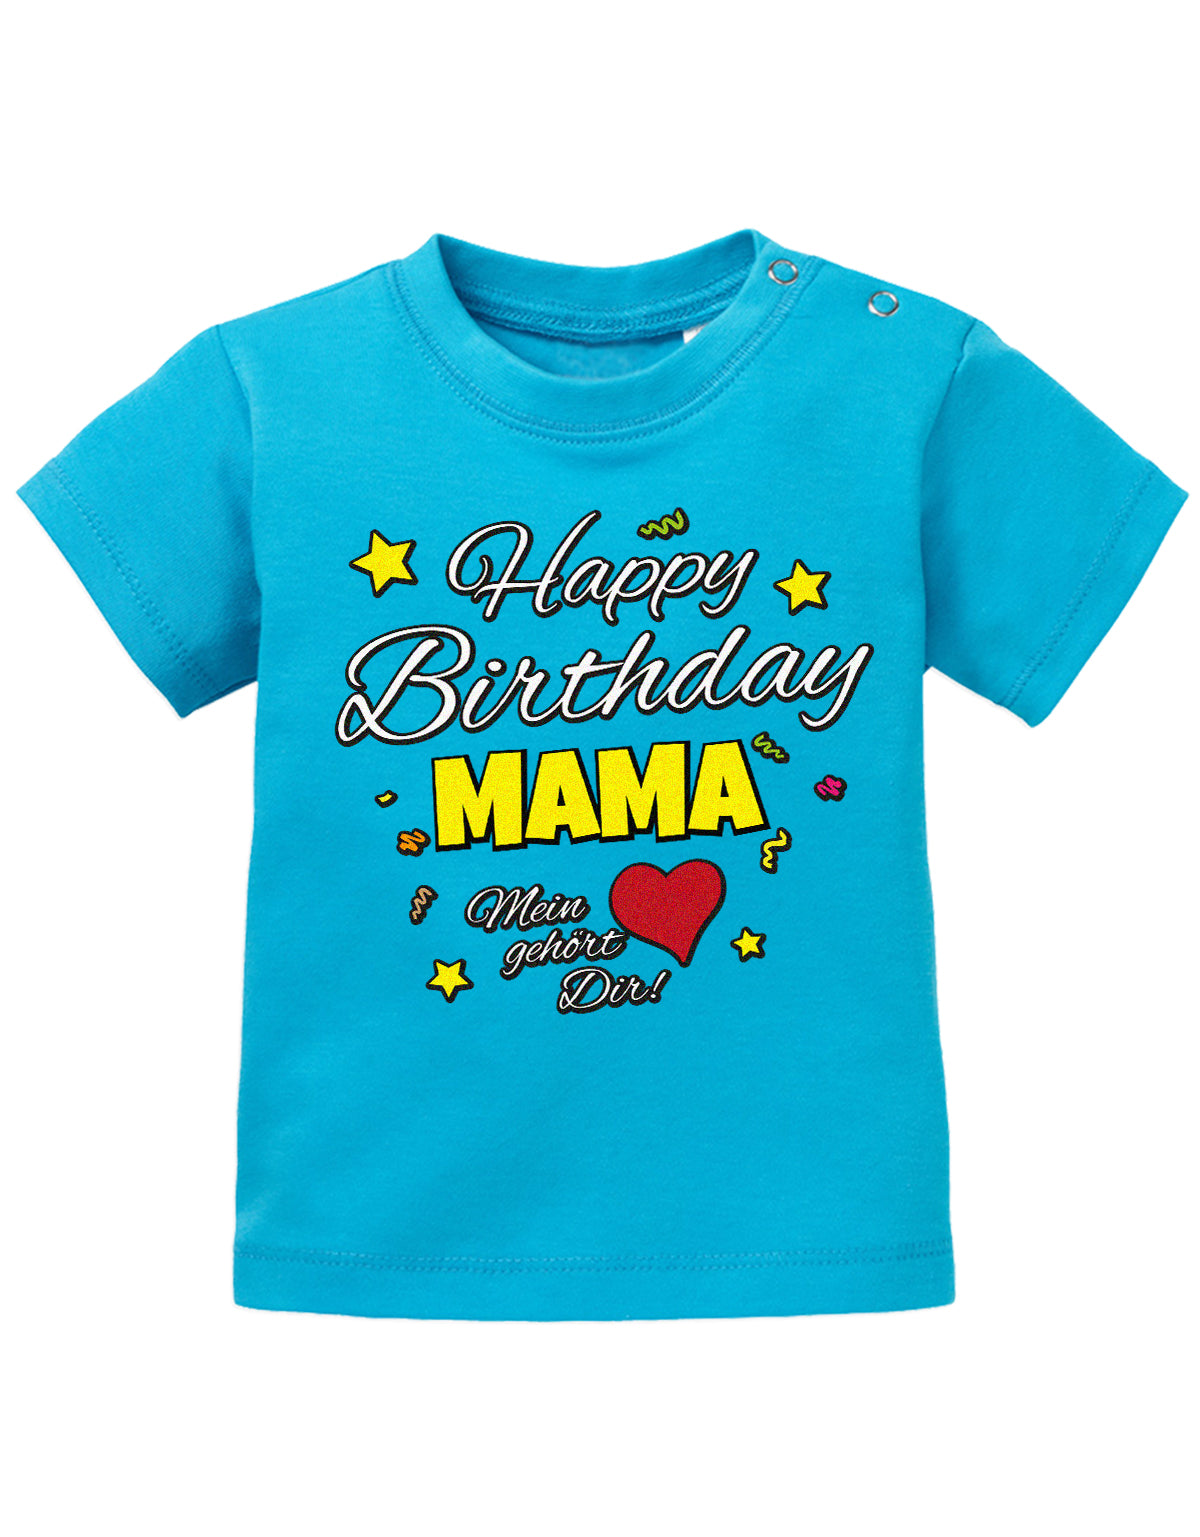 Mama Spruch Baby Shirt. Happy Birthday Mama, Mein Herz gehört dir. Blau